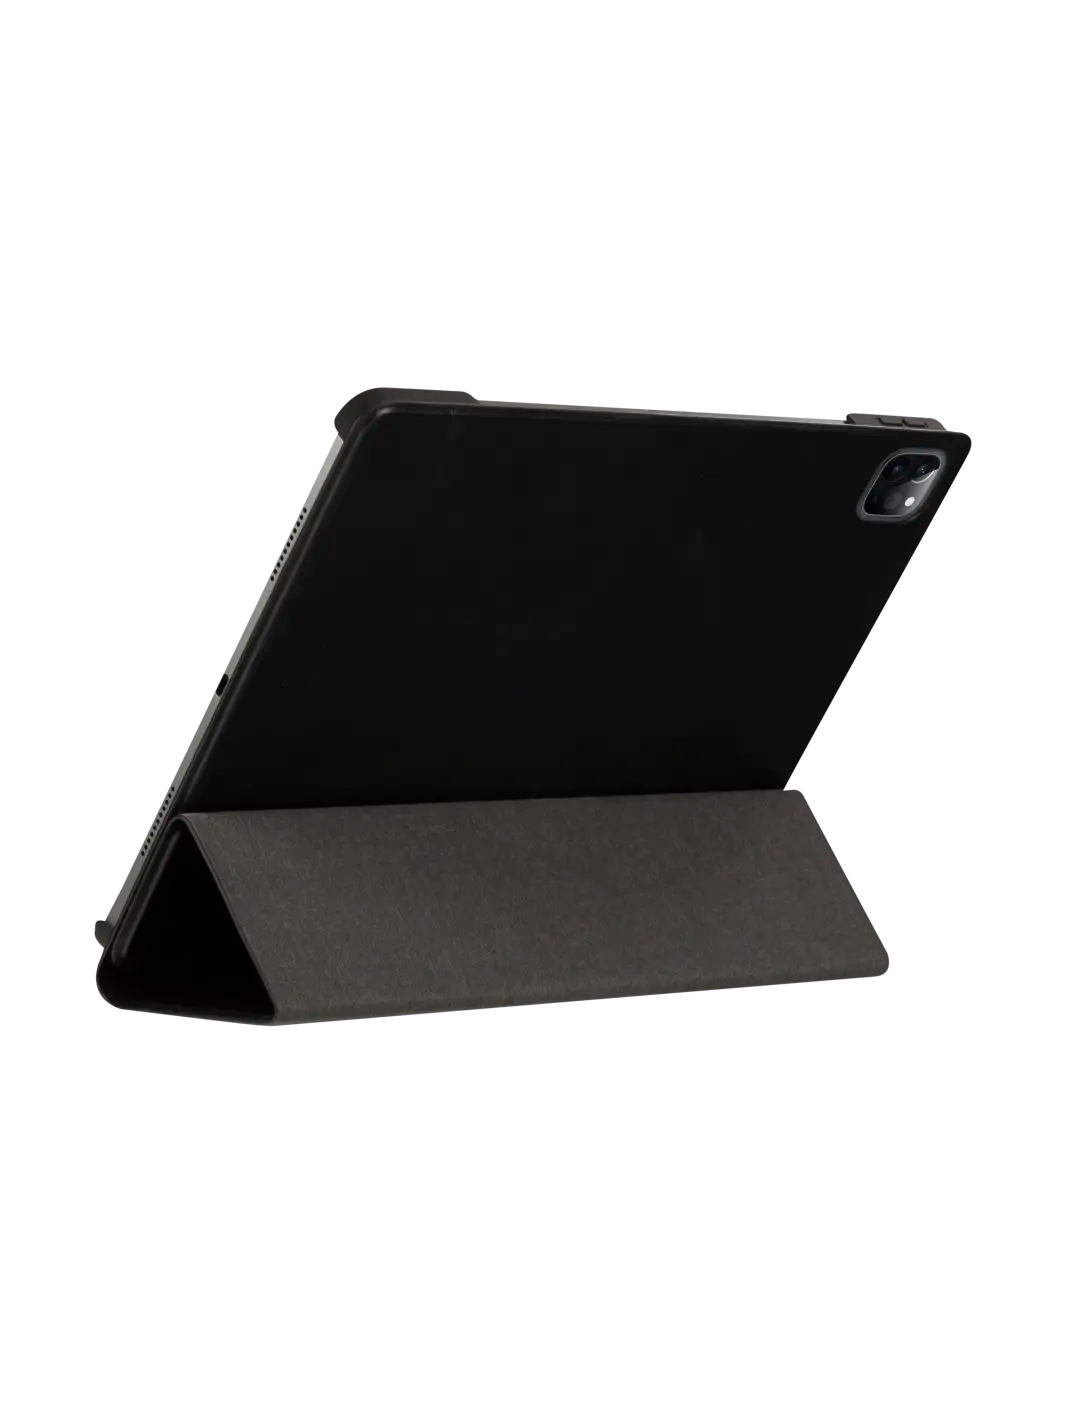 Risskov iPad case Black iPad Pro 12.9" (5th/6th Gen) iPad Cases